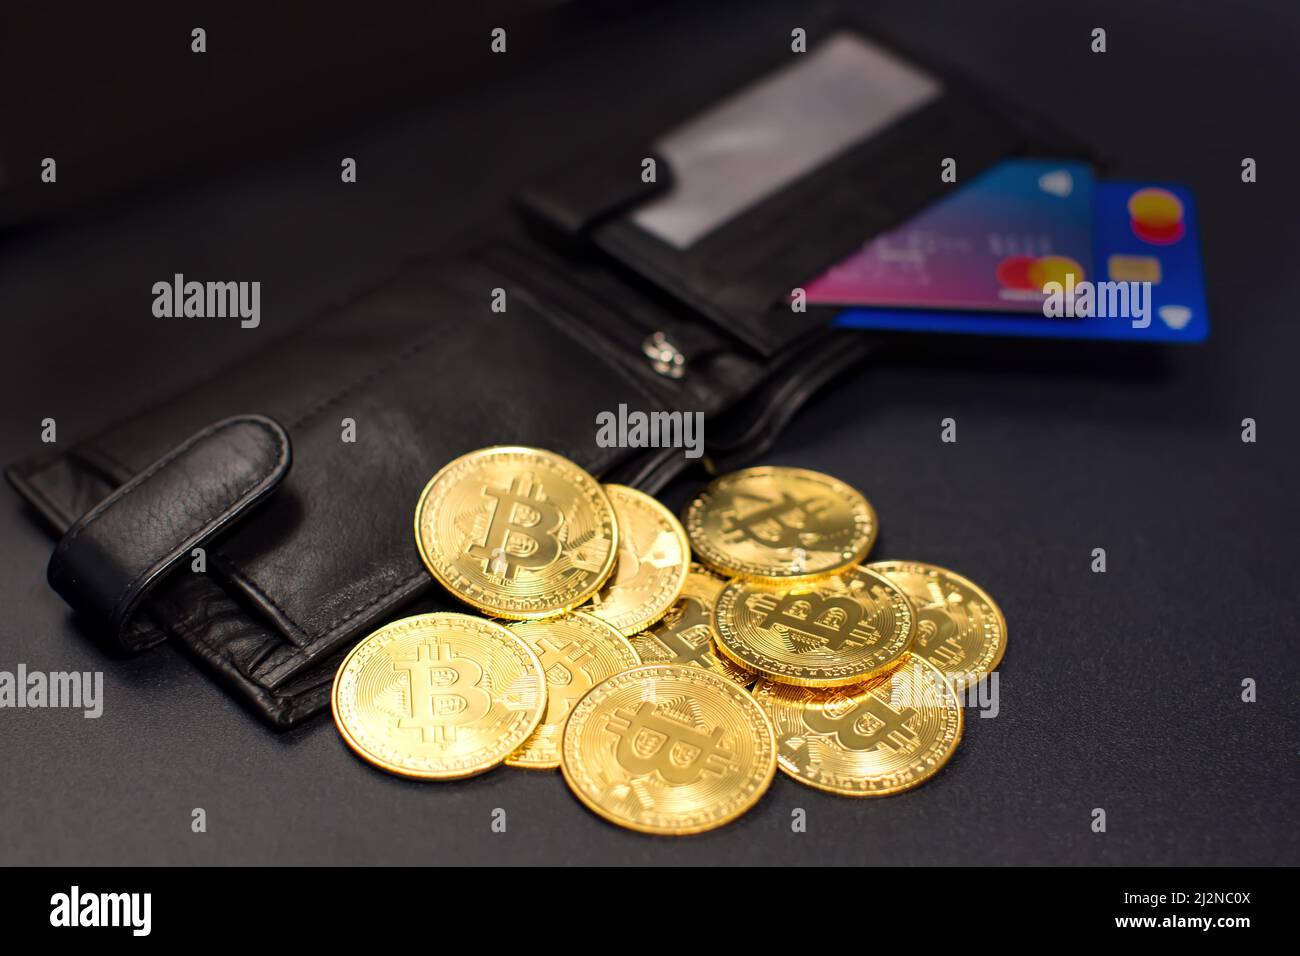 Monedas de Bitcoin y tarjetas de crédito en una cartera sobre el fondo de la pizarra Foto de stock